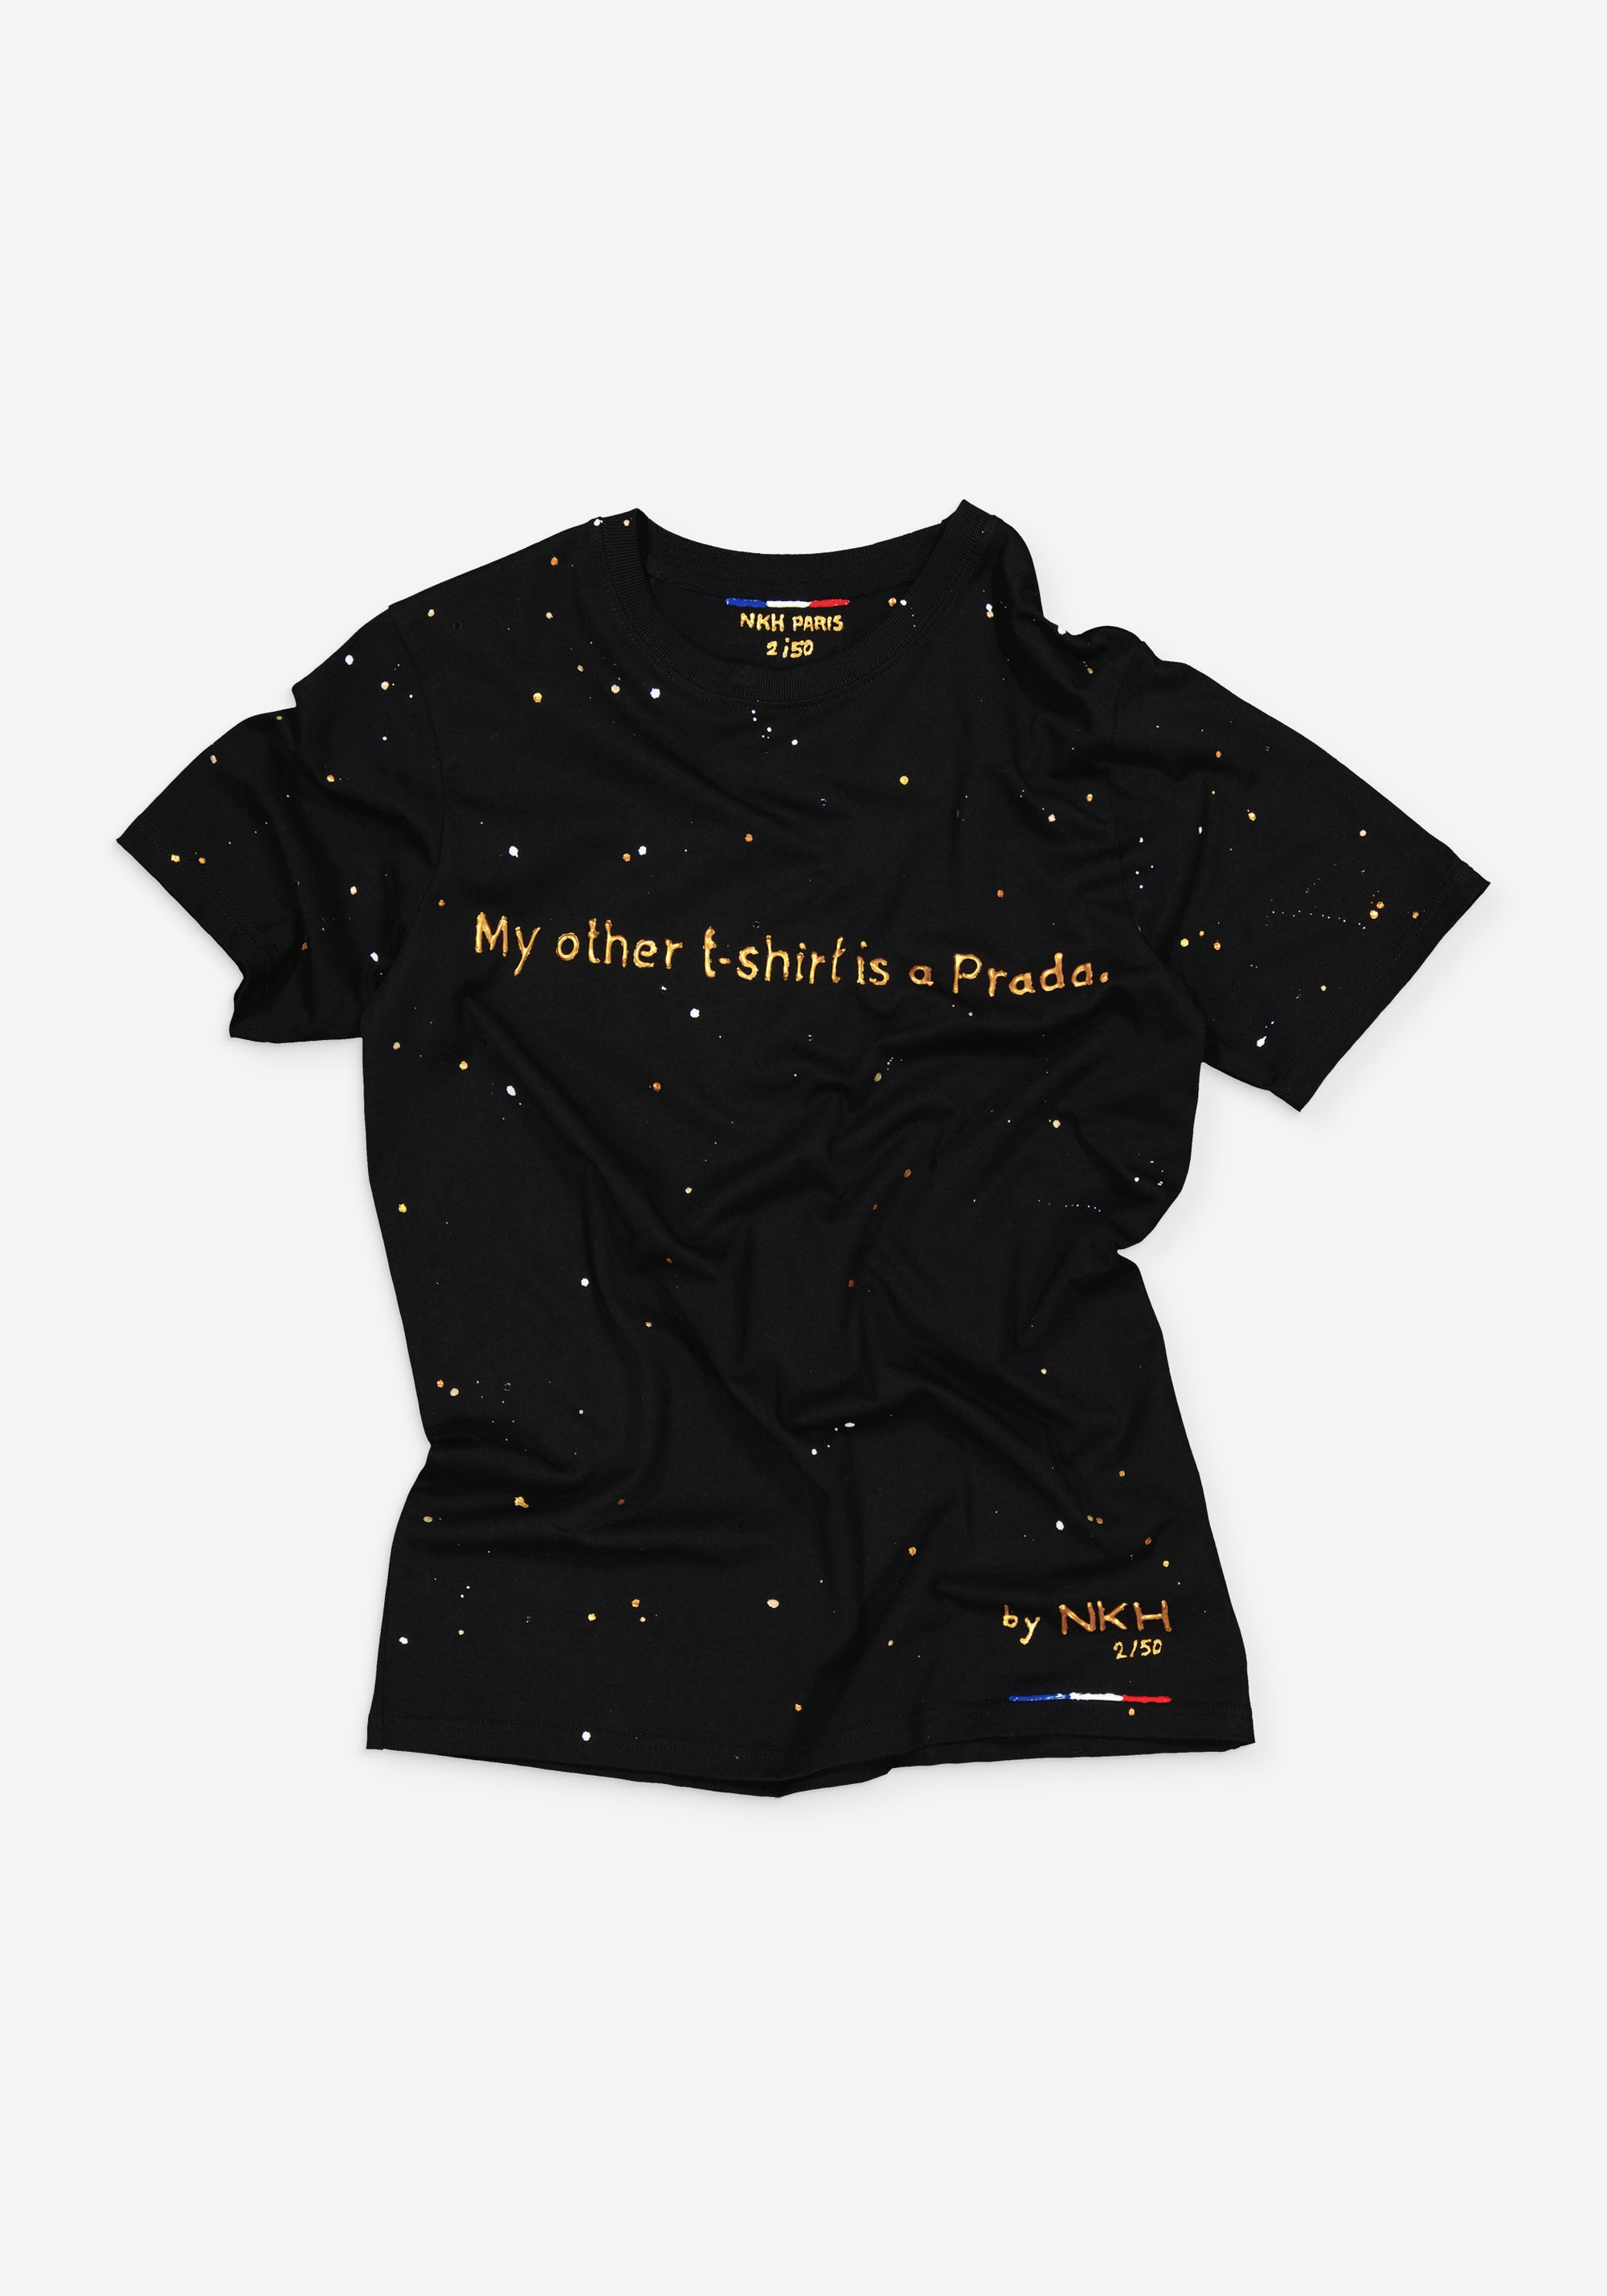 Tee-shirt noir - My other t-shirt is a Prada